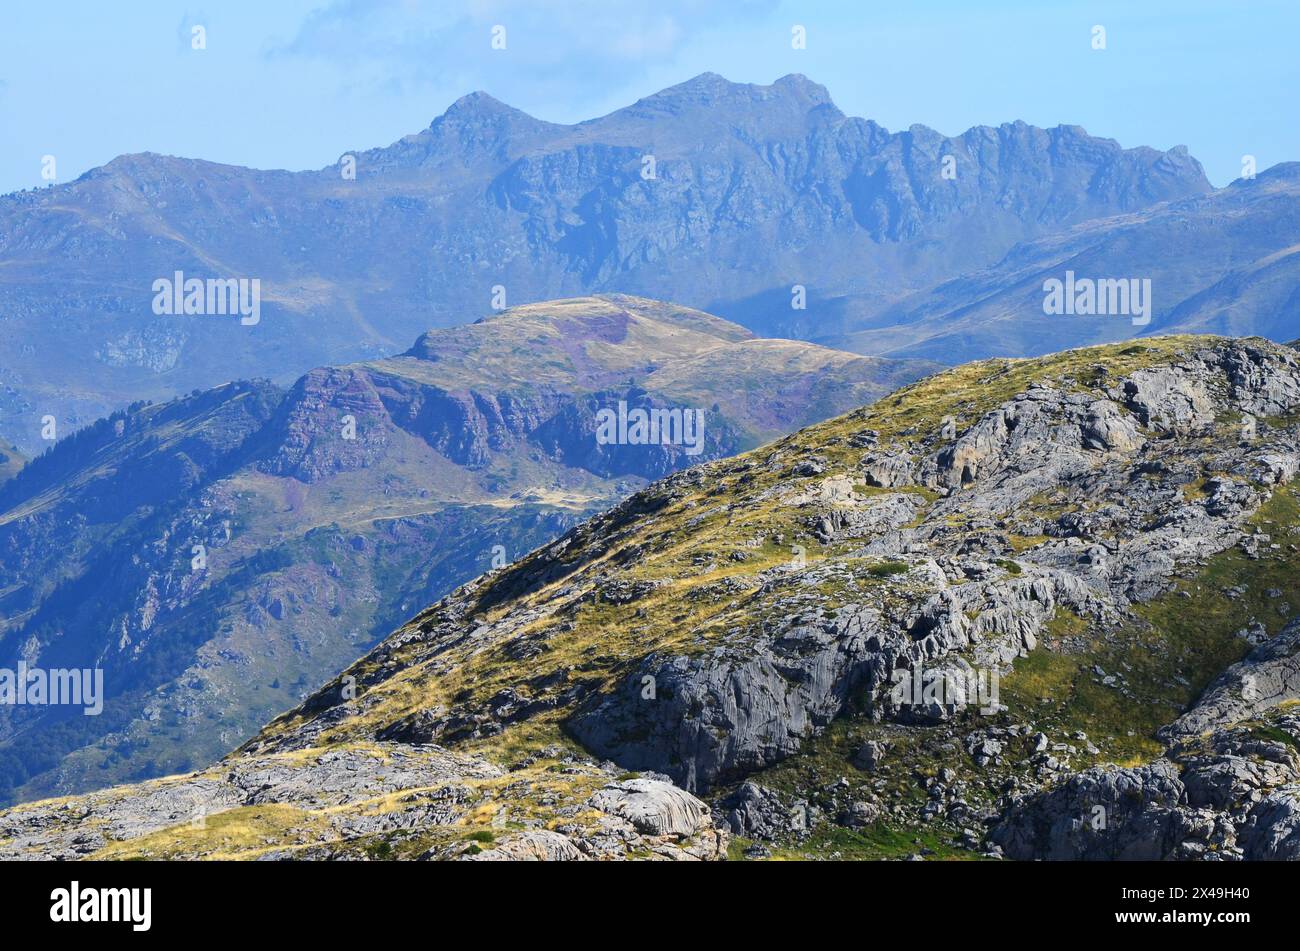 Parco naturale delle Valli occidentali nei Pirenei di Huesca, Spagna Foto Stock